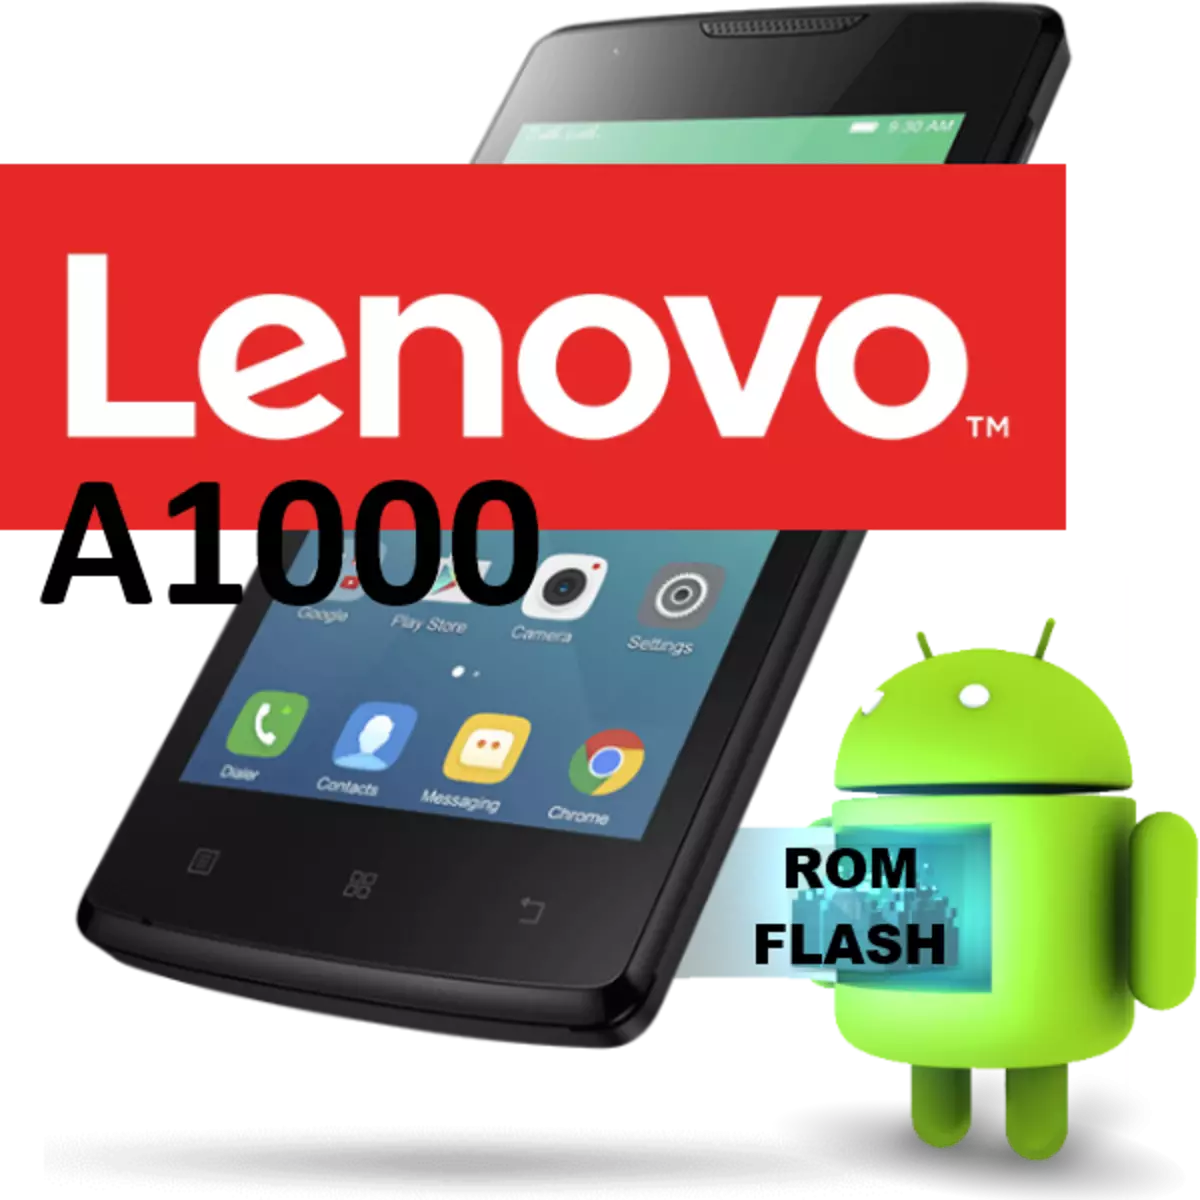 Firmwèr Lenovo A1000